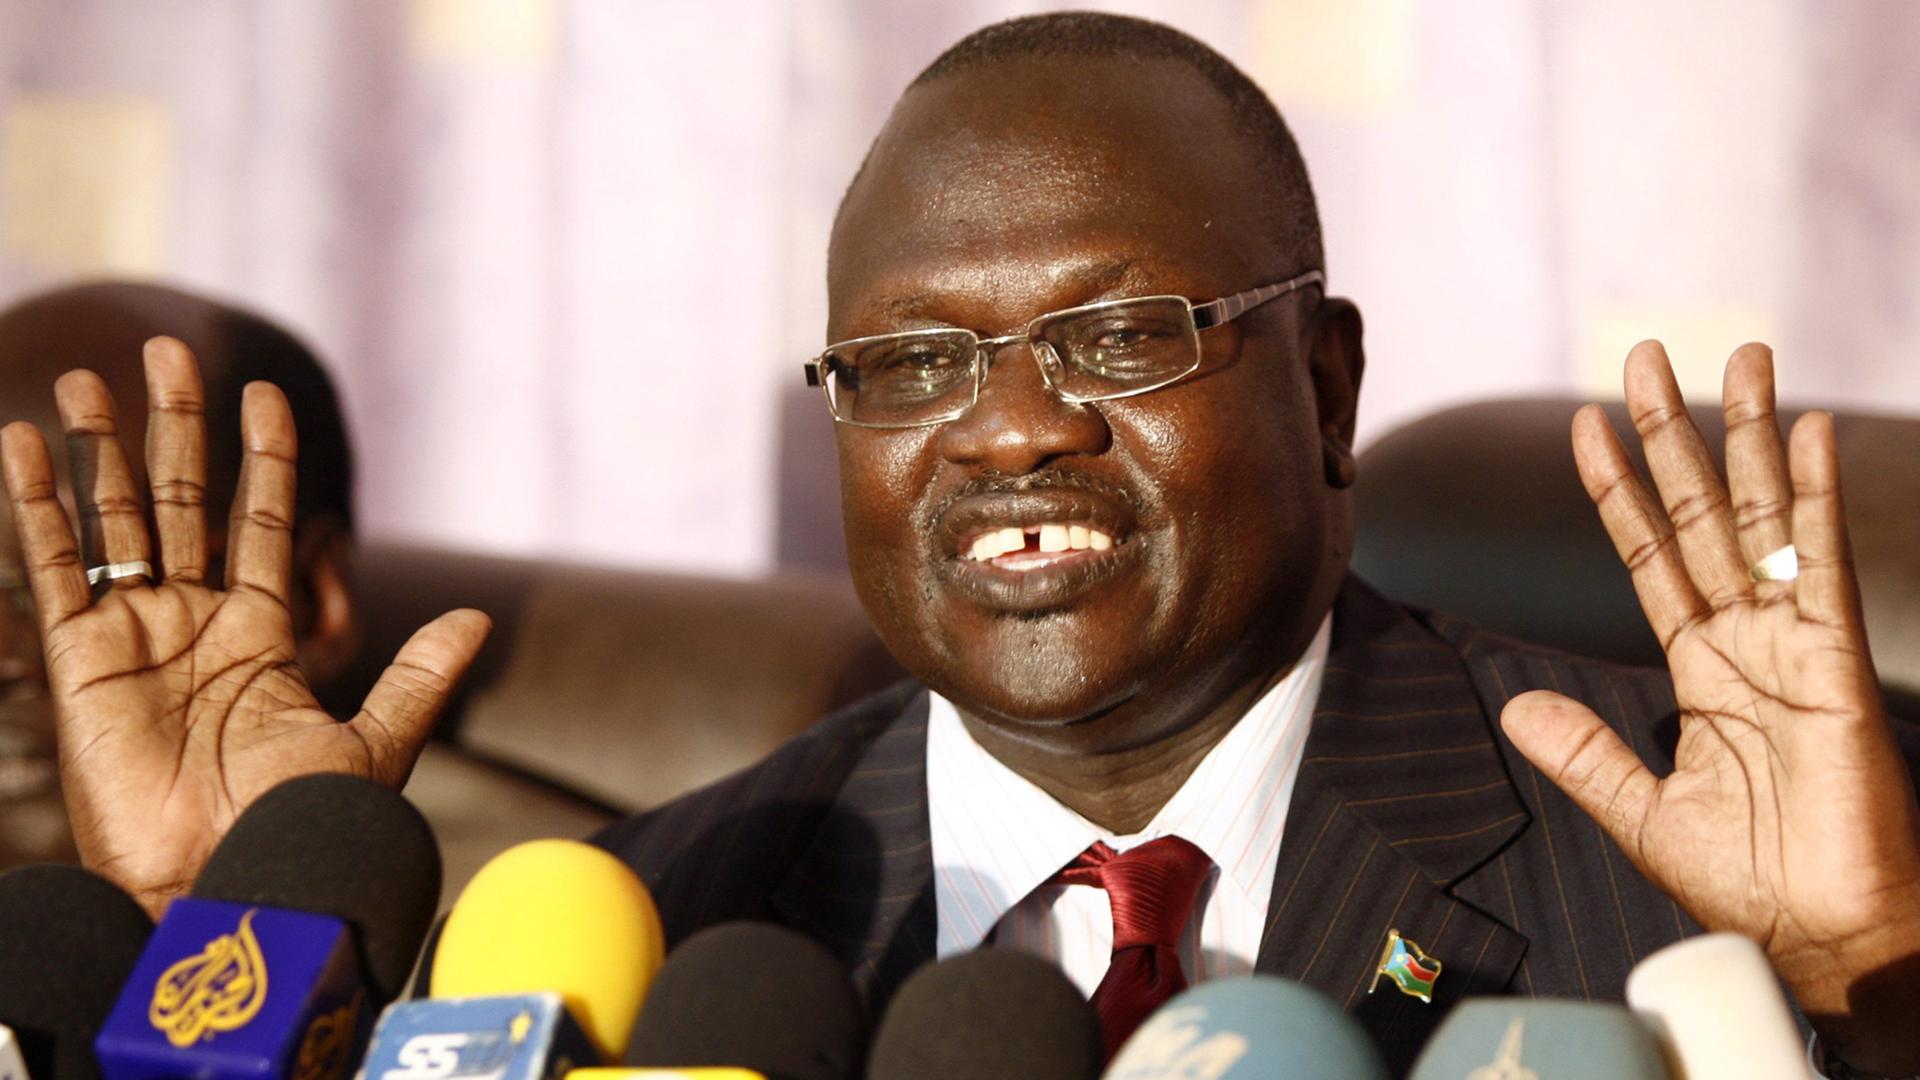 Der südsudanesische Rebellenführer steht hinter zahlreichen Mikrofonen.